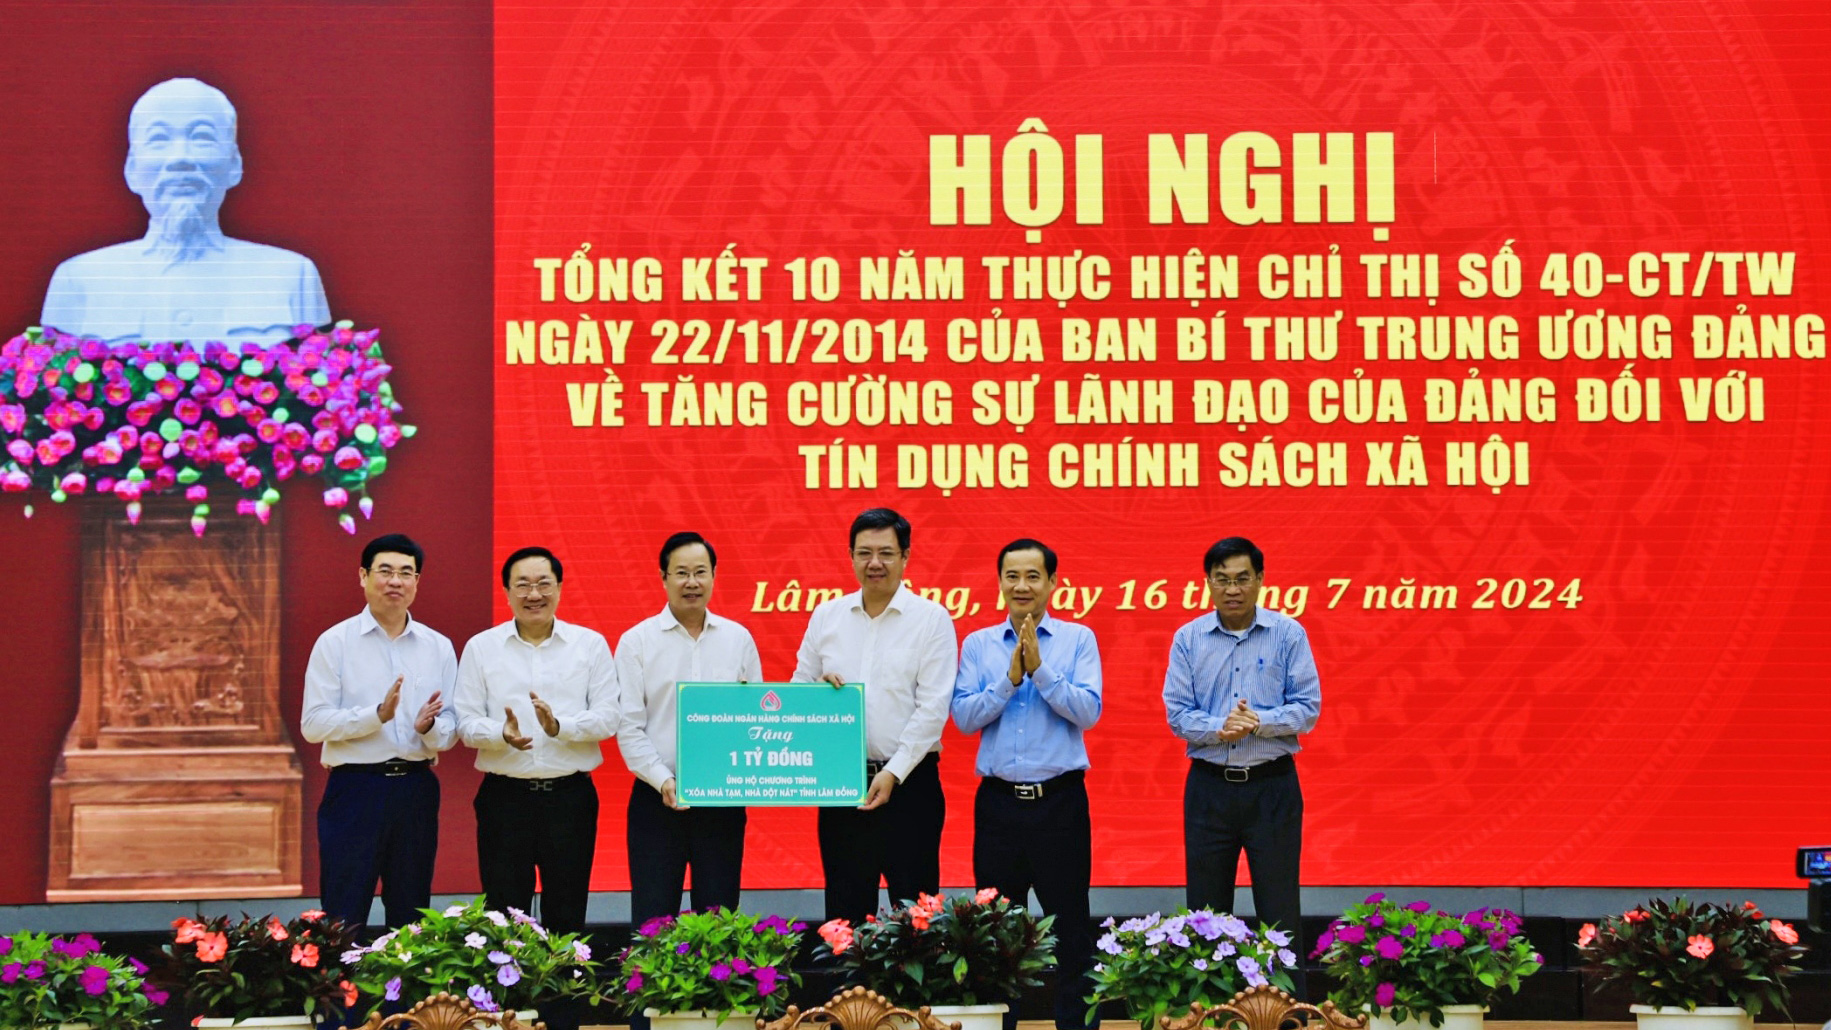 Lâm Đồng tổng kết 10 năm thực hiện Chỉ thị của Ban Bí thư về “Tăng cường sự lãnh đạo của Đảng đối với tín dụng chính sách xã hội"